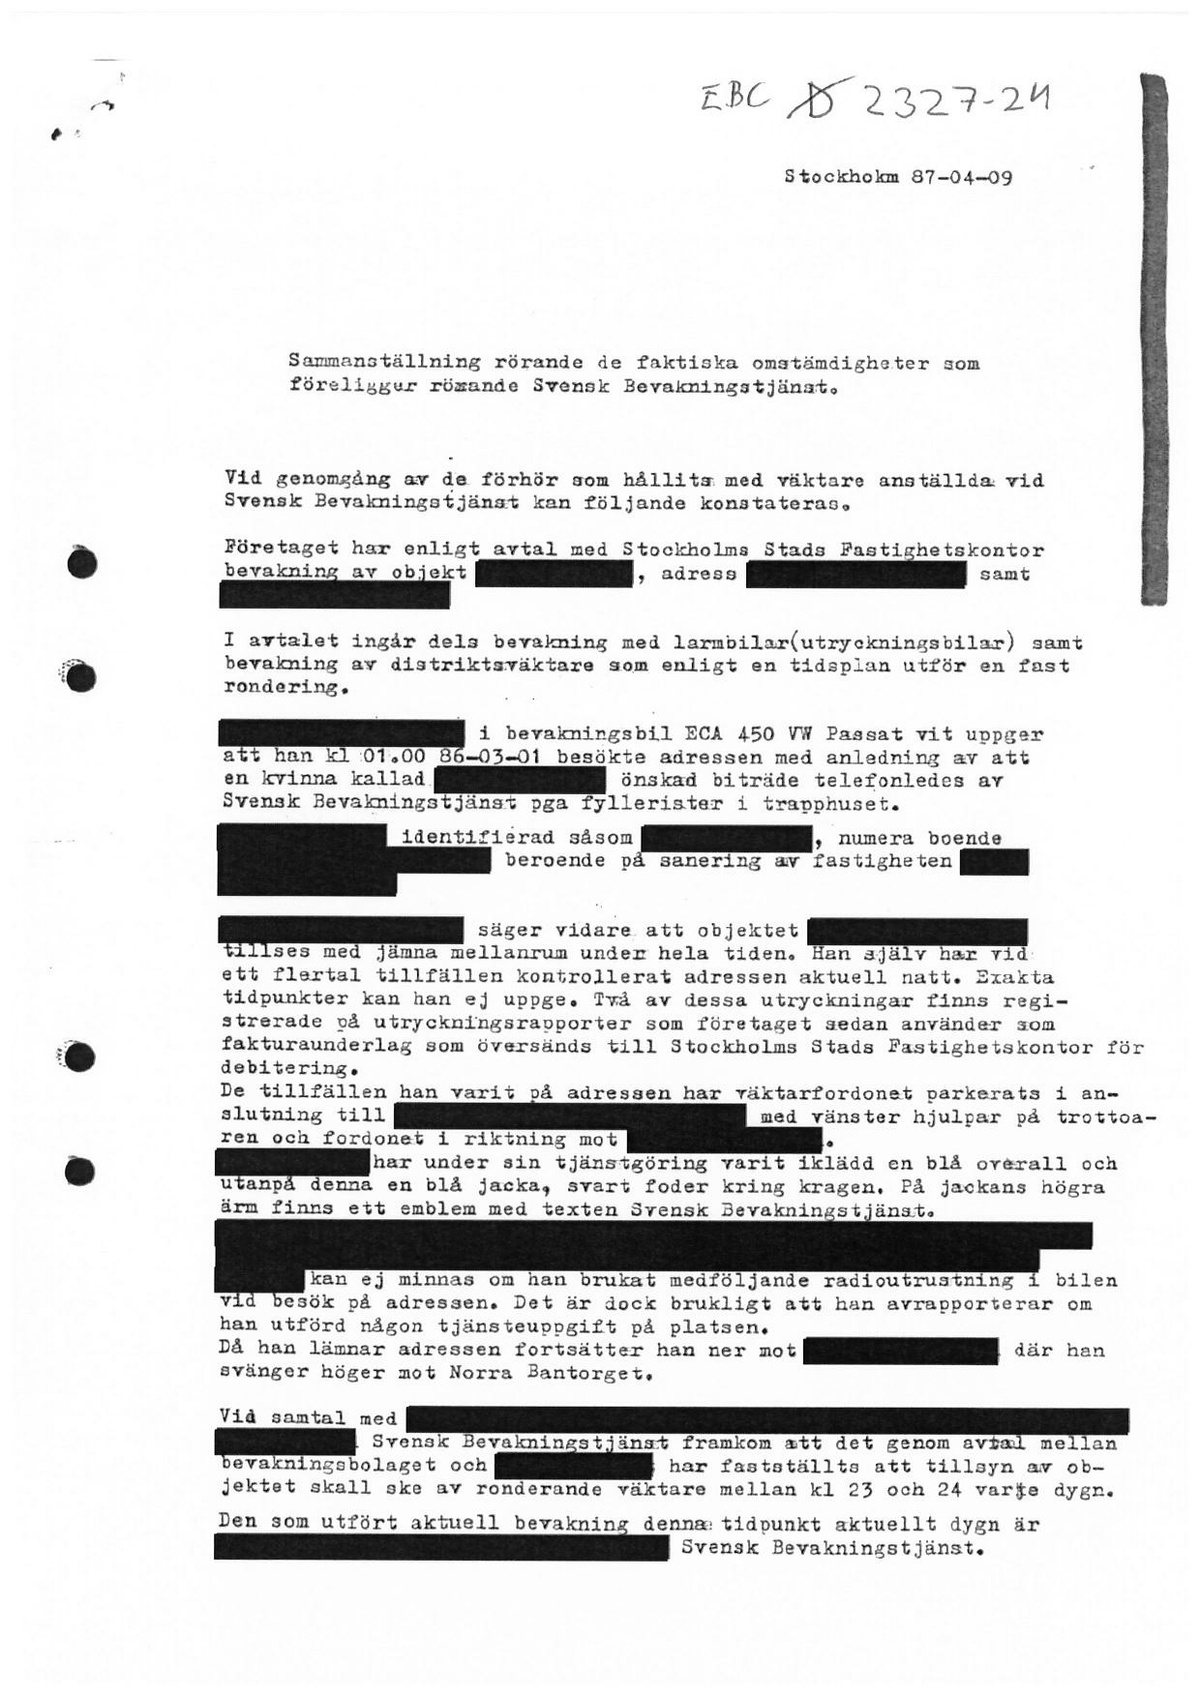 Pol-1987-04-09 EBC2327-24 Polisbil-kommunikationsradio-utanför-bostaden.pdf